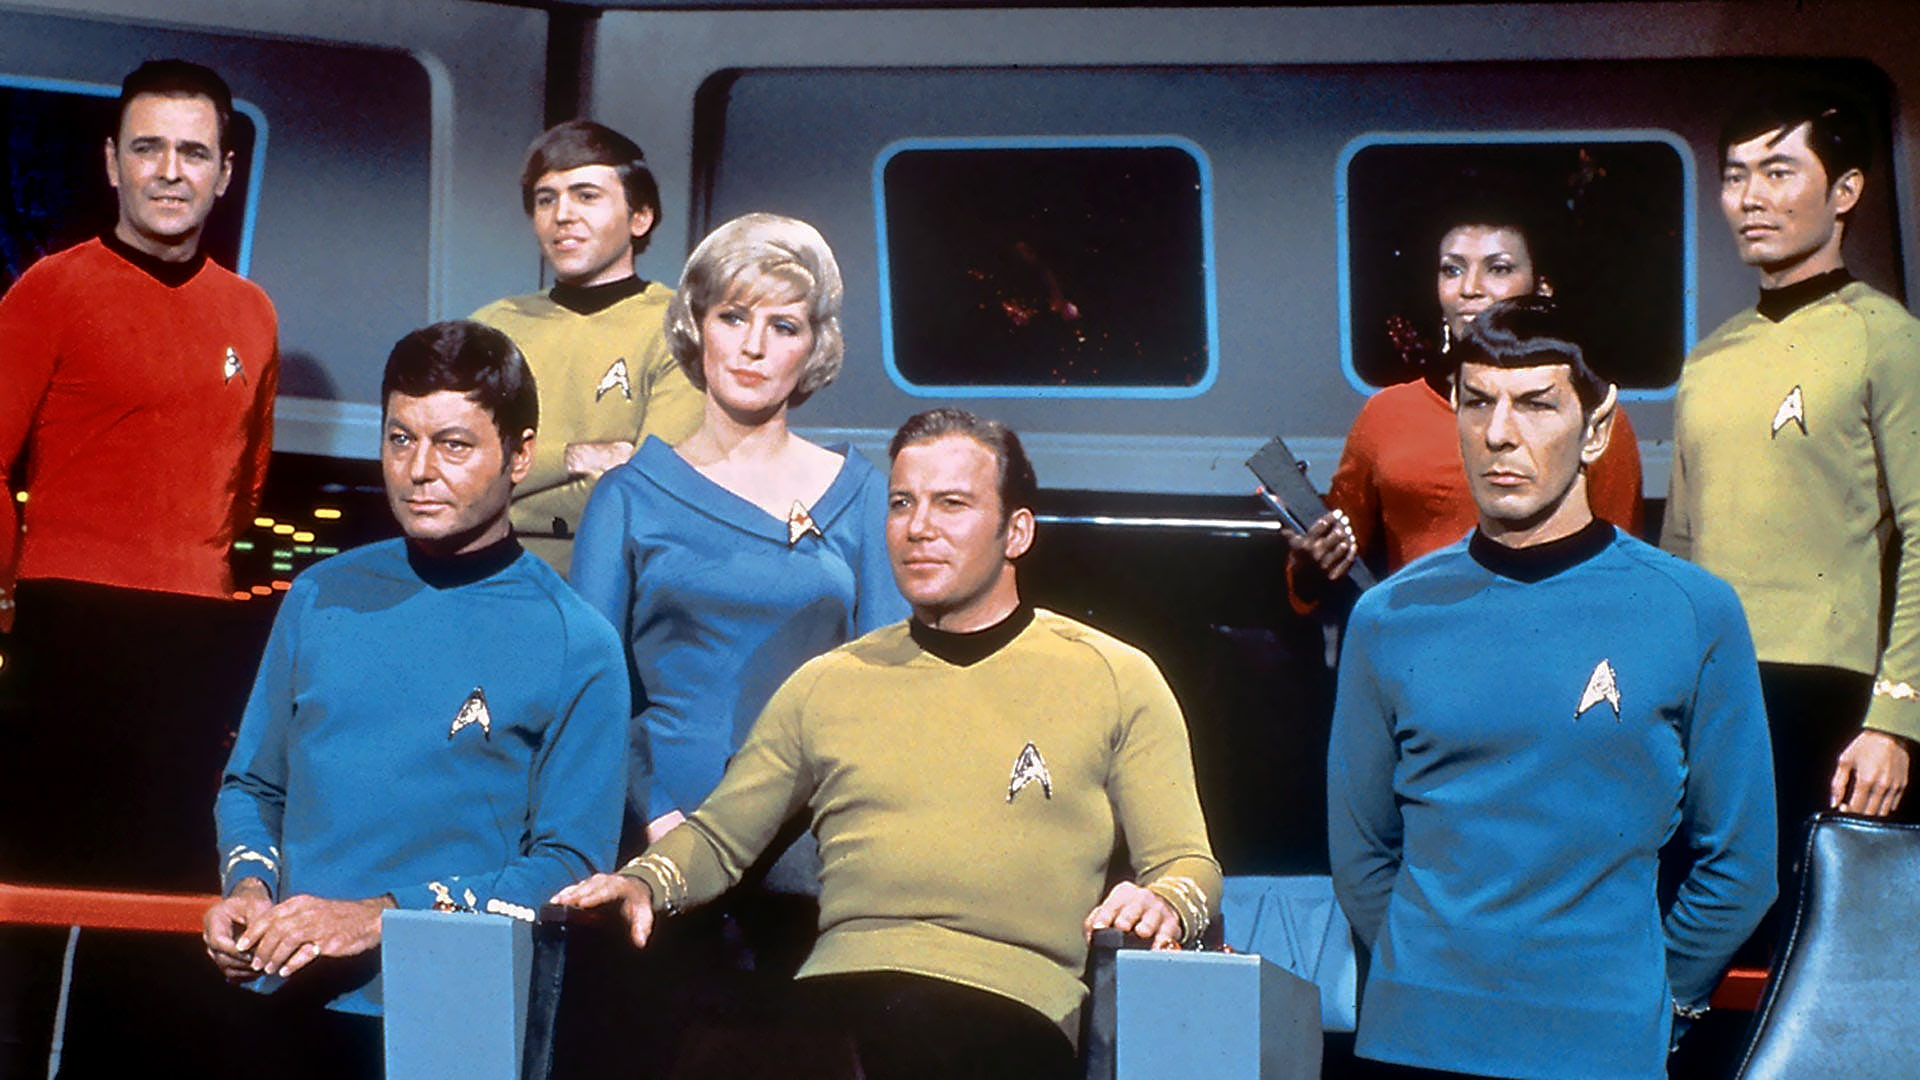 Star_Trek_TOS_cast-min.jpg